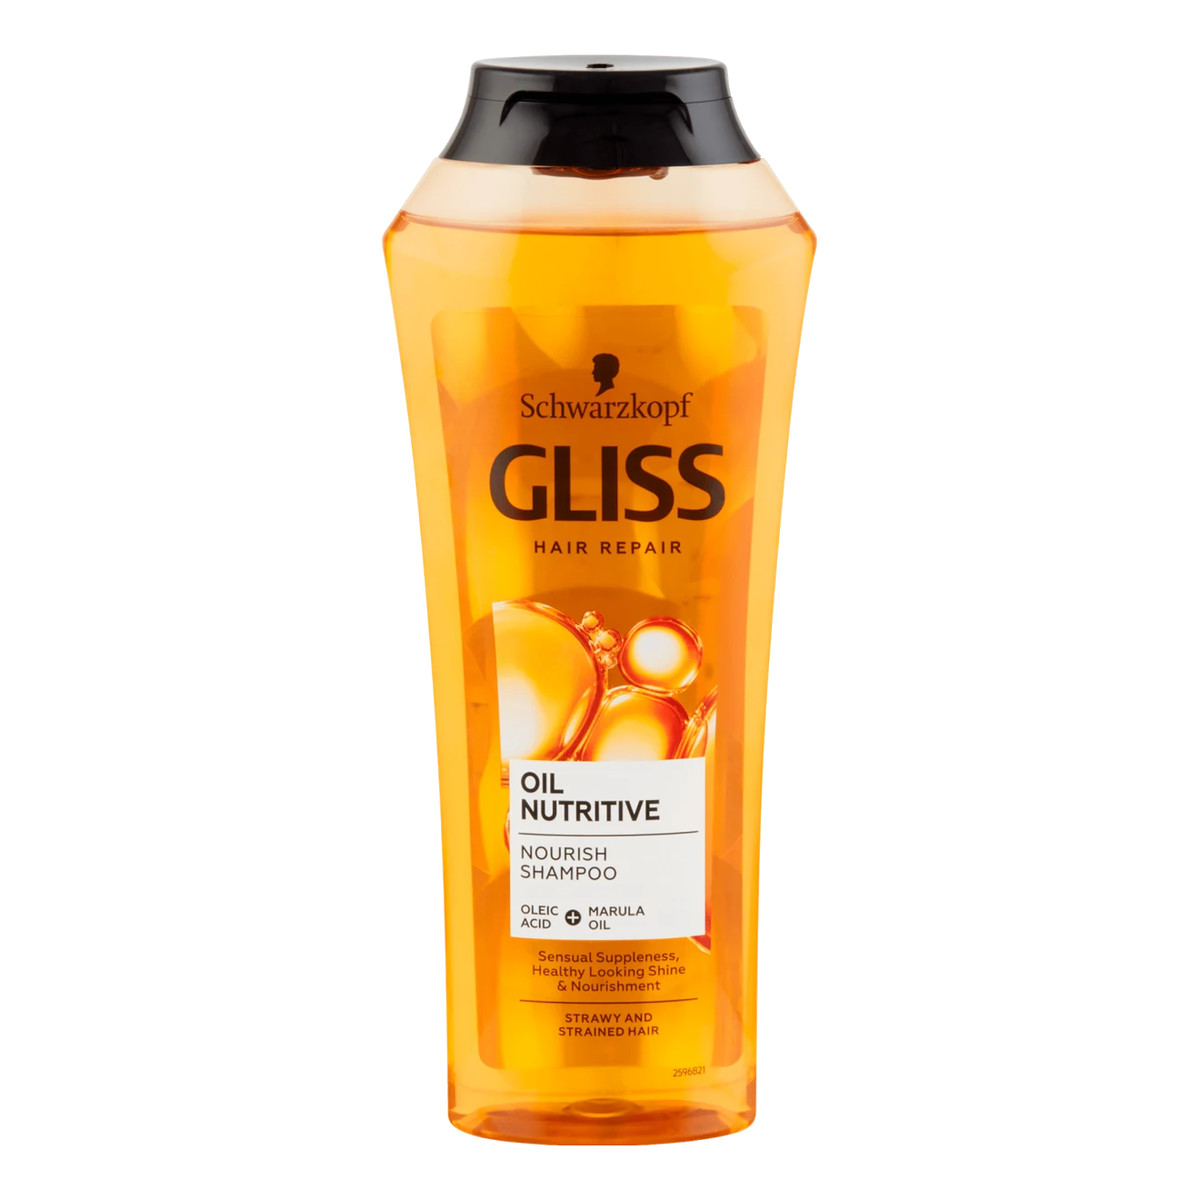 Gliss Oil nutritive shampoo odżywczy szampon do włosów 250ml